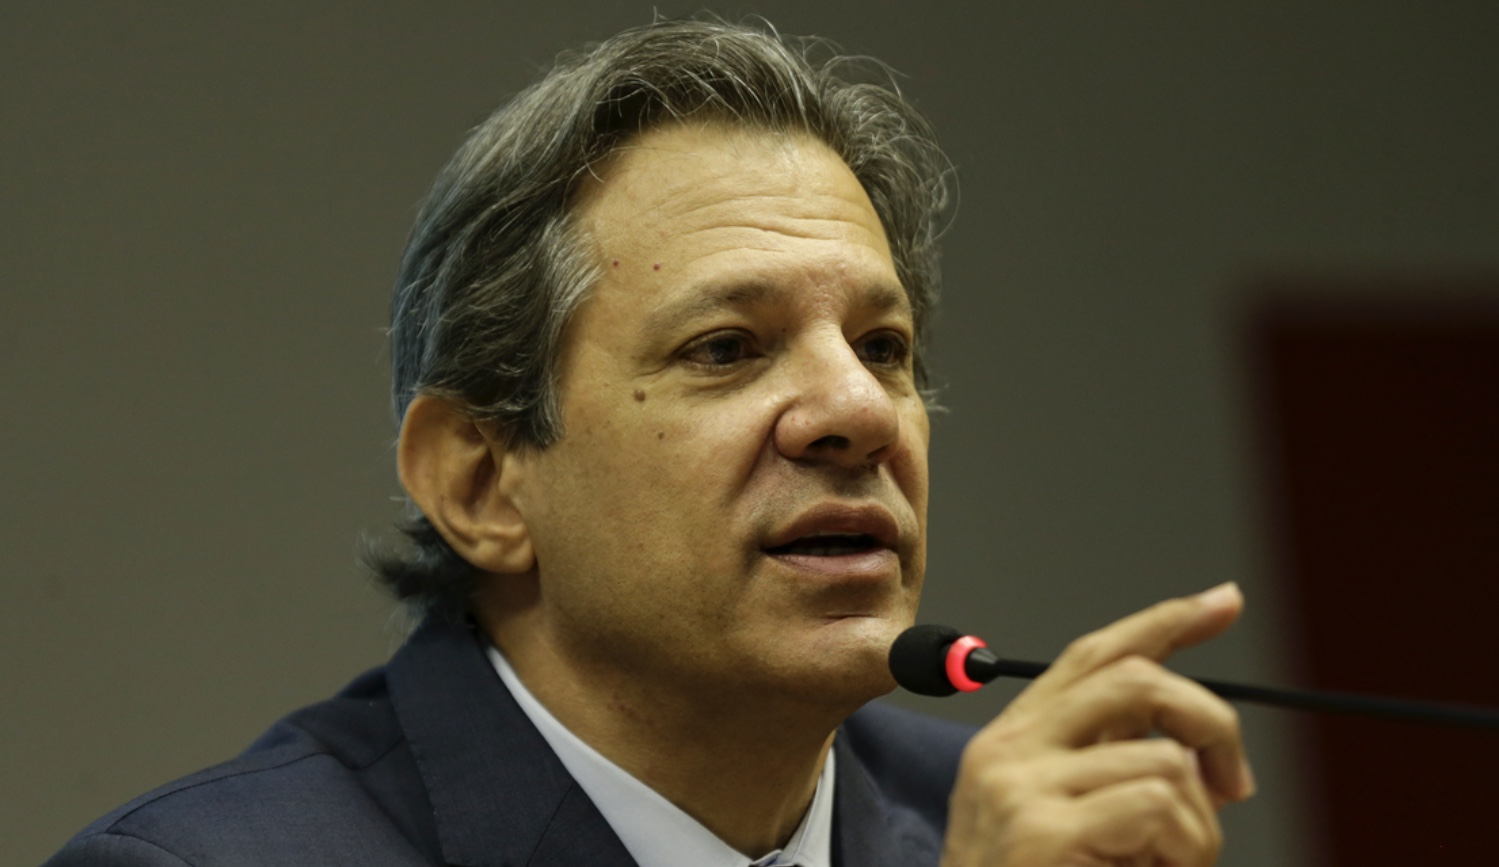 Sérgio Reis admite que errou e nega ser 'puxa-saco' de Bolsonaro - Politica  - Estado de Minas